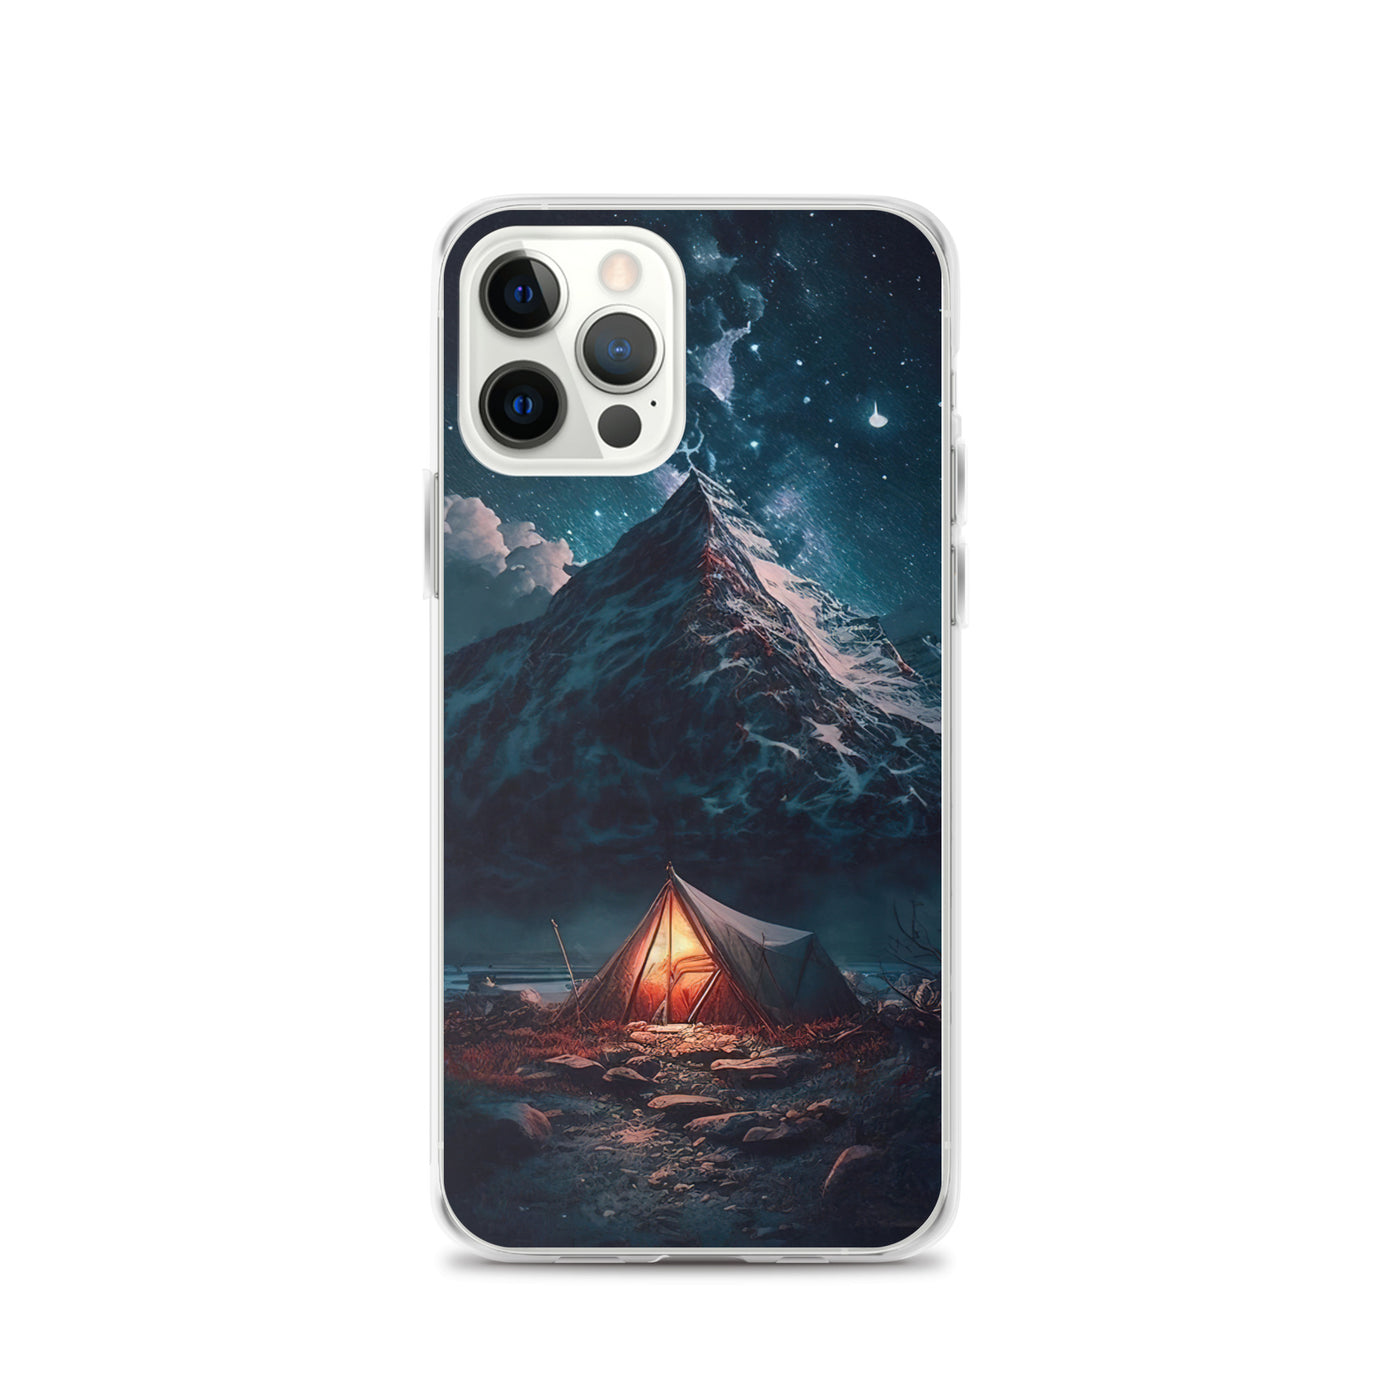 Zelt und Berg in der Nacht - Sterne am Himmel - Landschaftsmalerei - iPhone Schutzhülle (durchsichtig) camping xxx iPhone 12 Pro